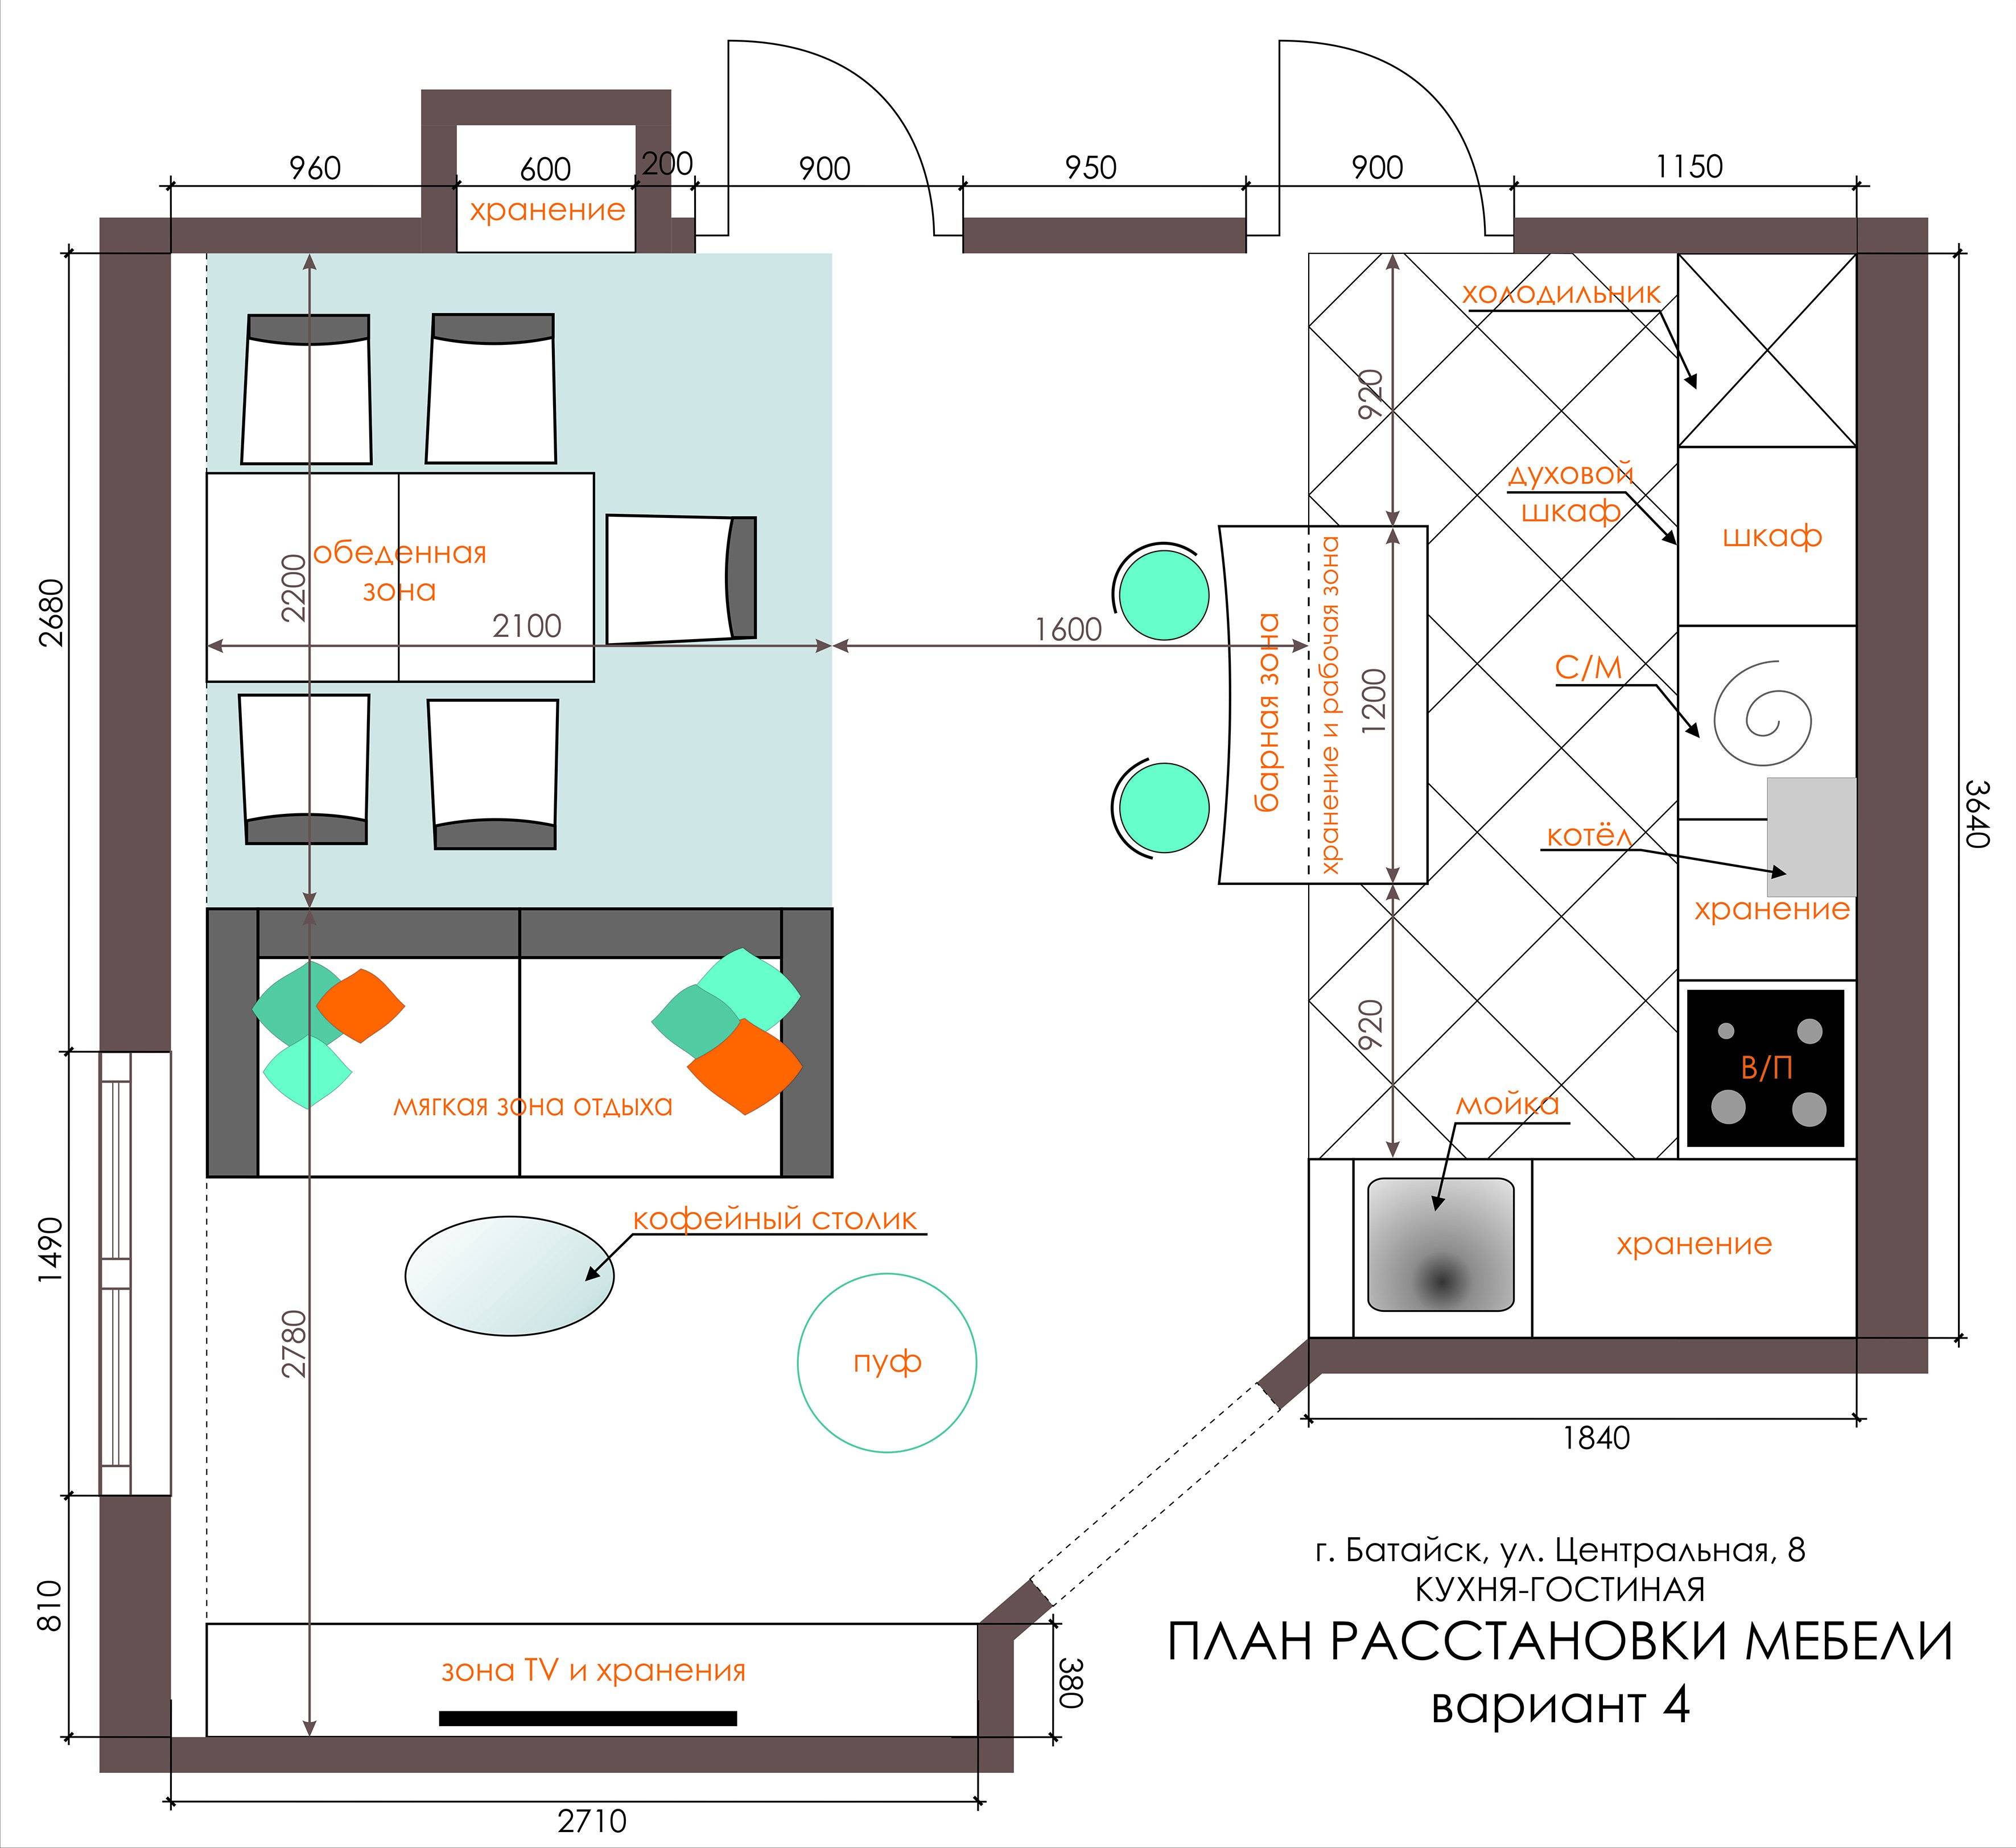 Планировка кухни гостиной 17 кв м: фото, описание